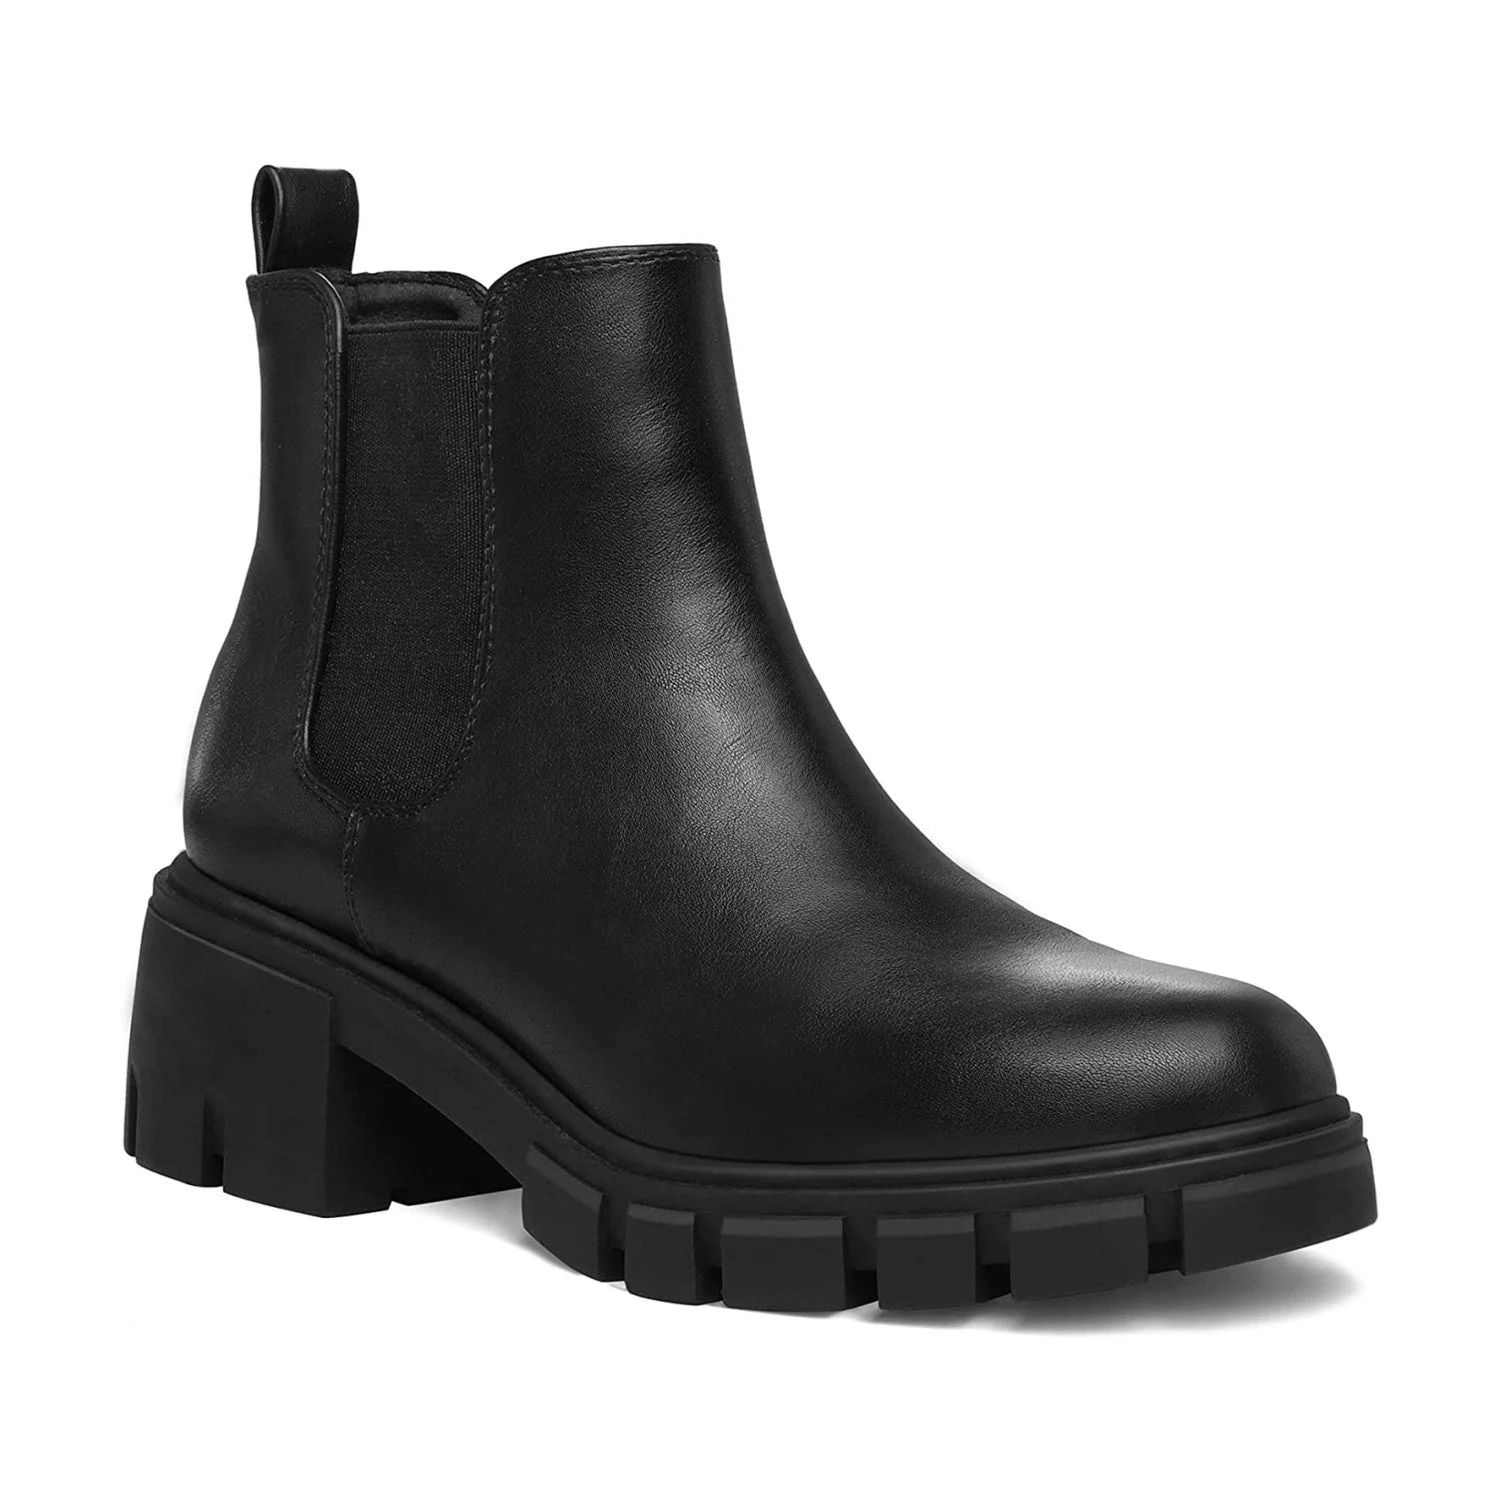 Mysoft Women's Black Platform Chelsea Boots Ankle Boots Size 8 | Walmart (US)